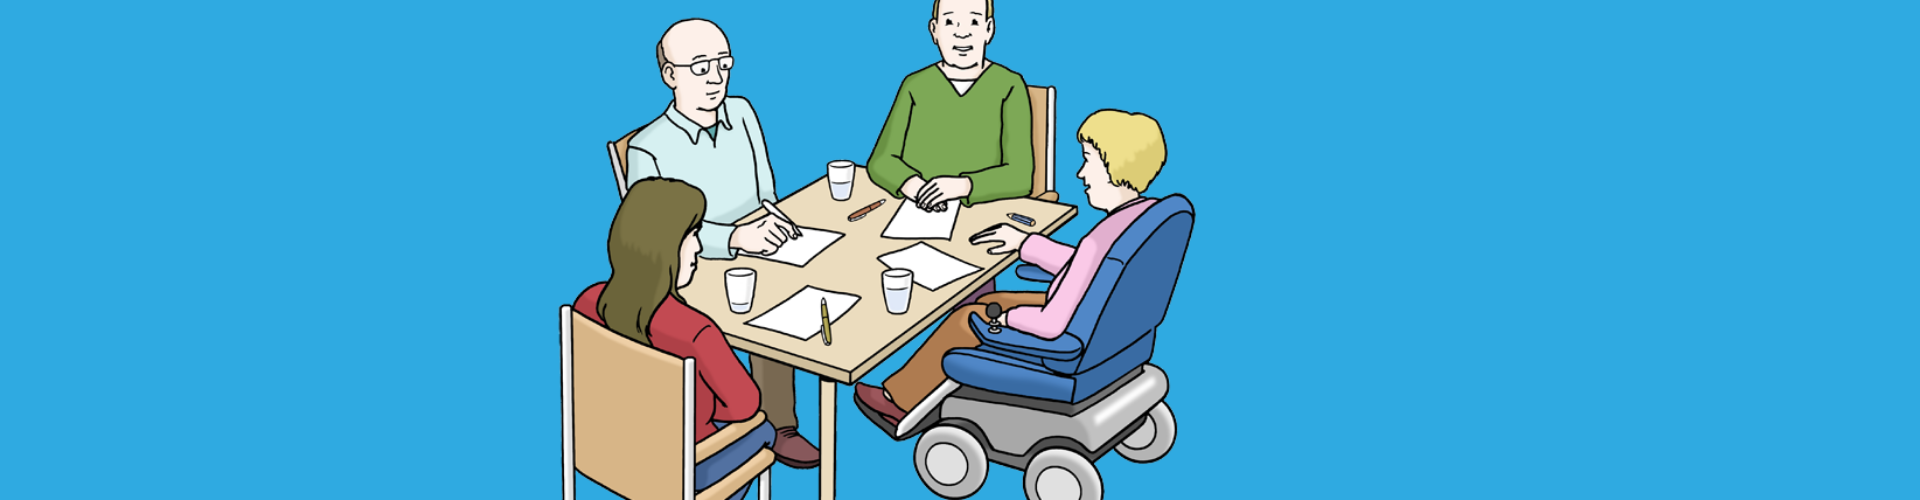 Man sieht eine Familie. Zwei Frau, darunter eine im Rollstuhl, ein alter Mann und ein junger Mann. Sie besprechen etwas